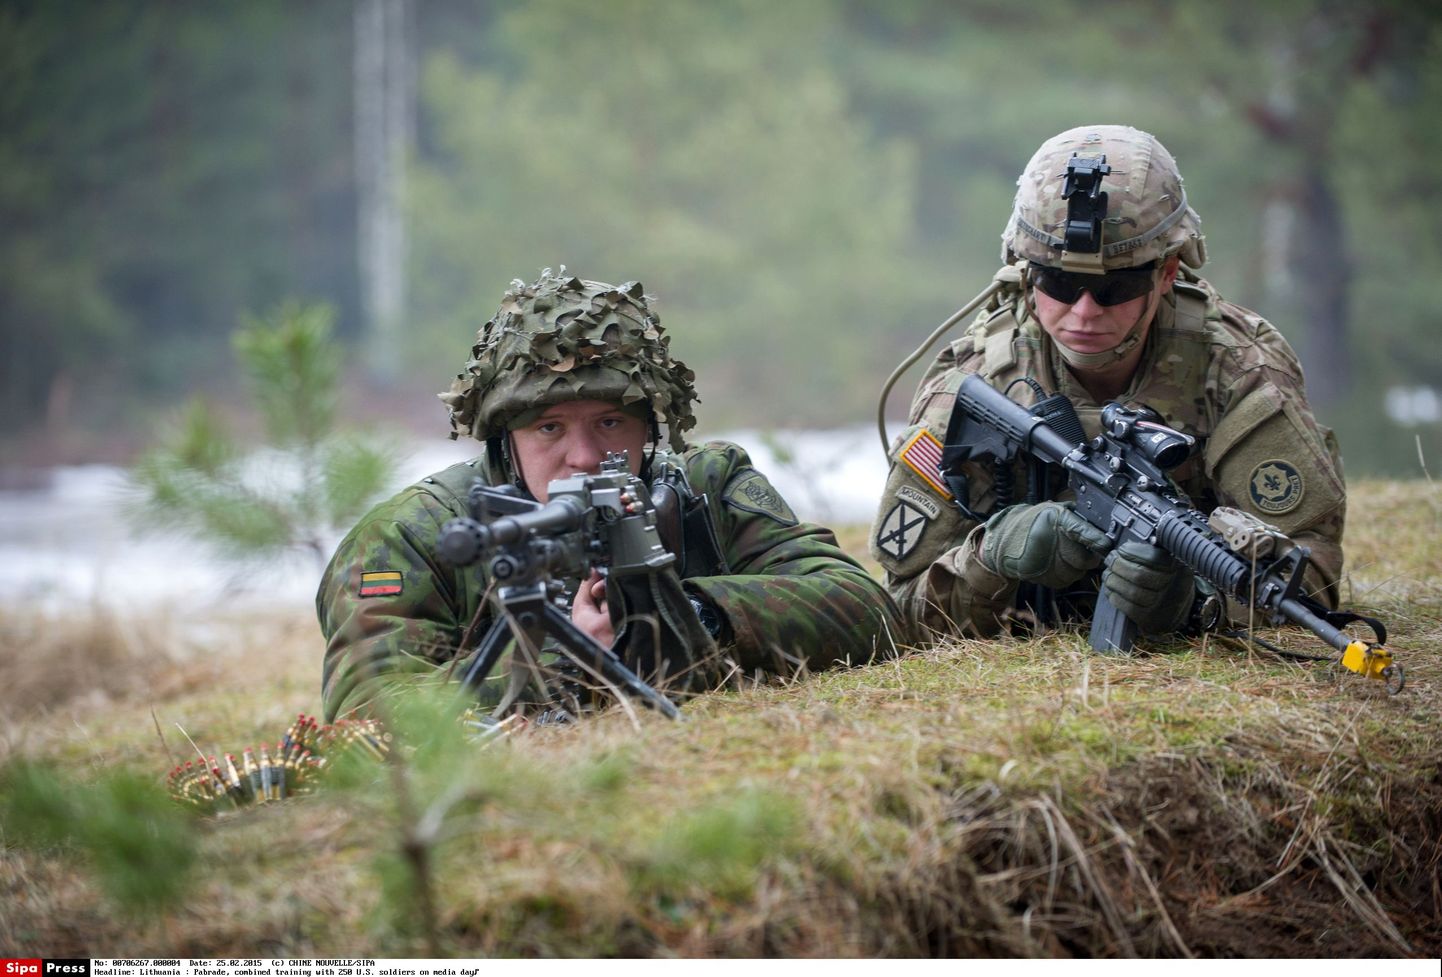 Leedu sõdur koos USA relvavennaga õppusel.